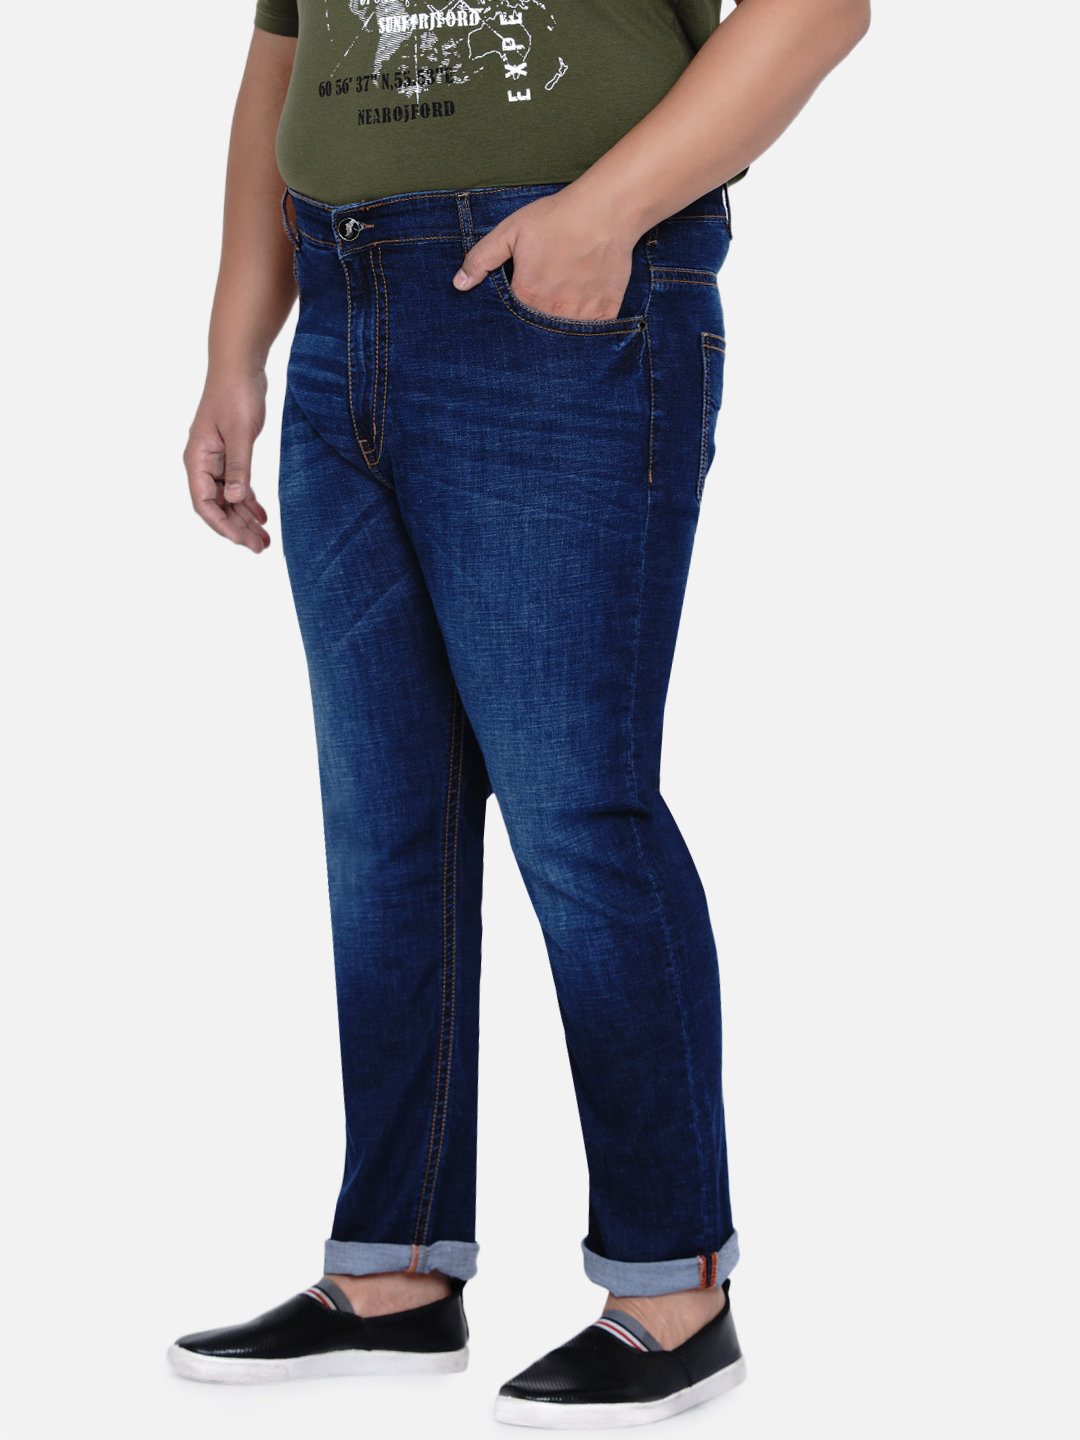 bottomwear/jeans/JPJ6033/jpj6033-4.jpg